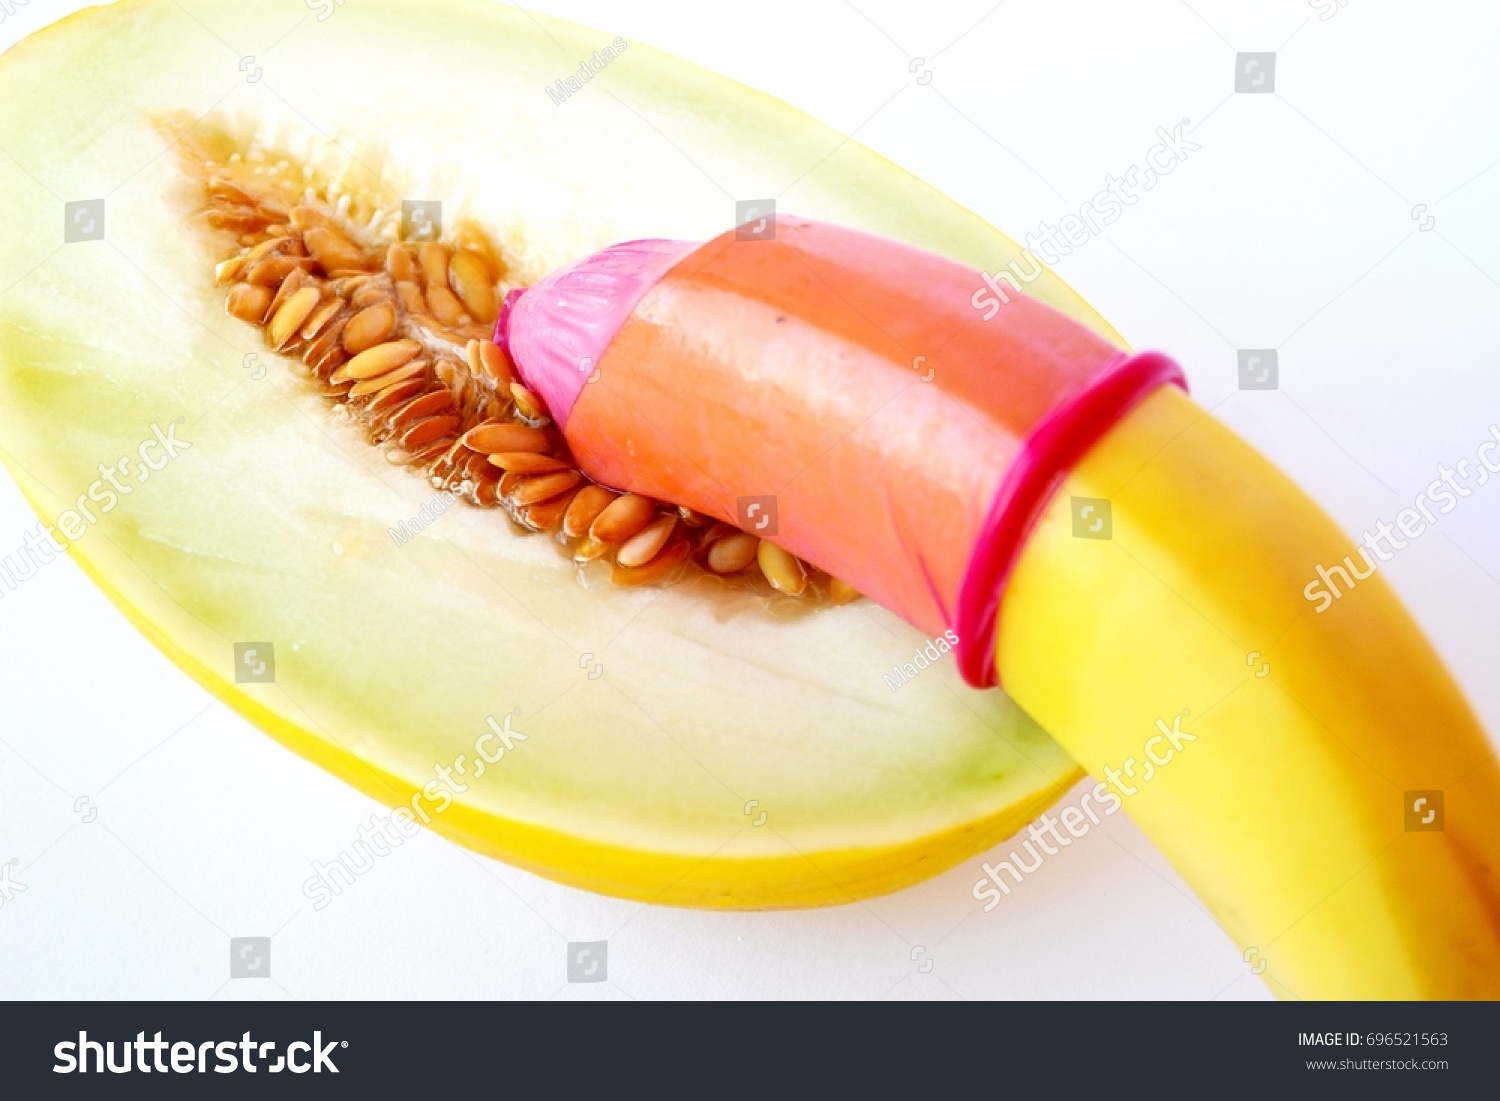 banana vs vagina sex photo